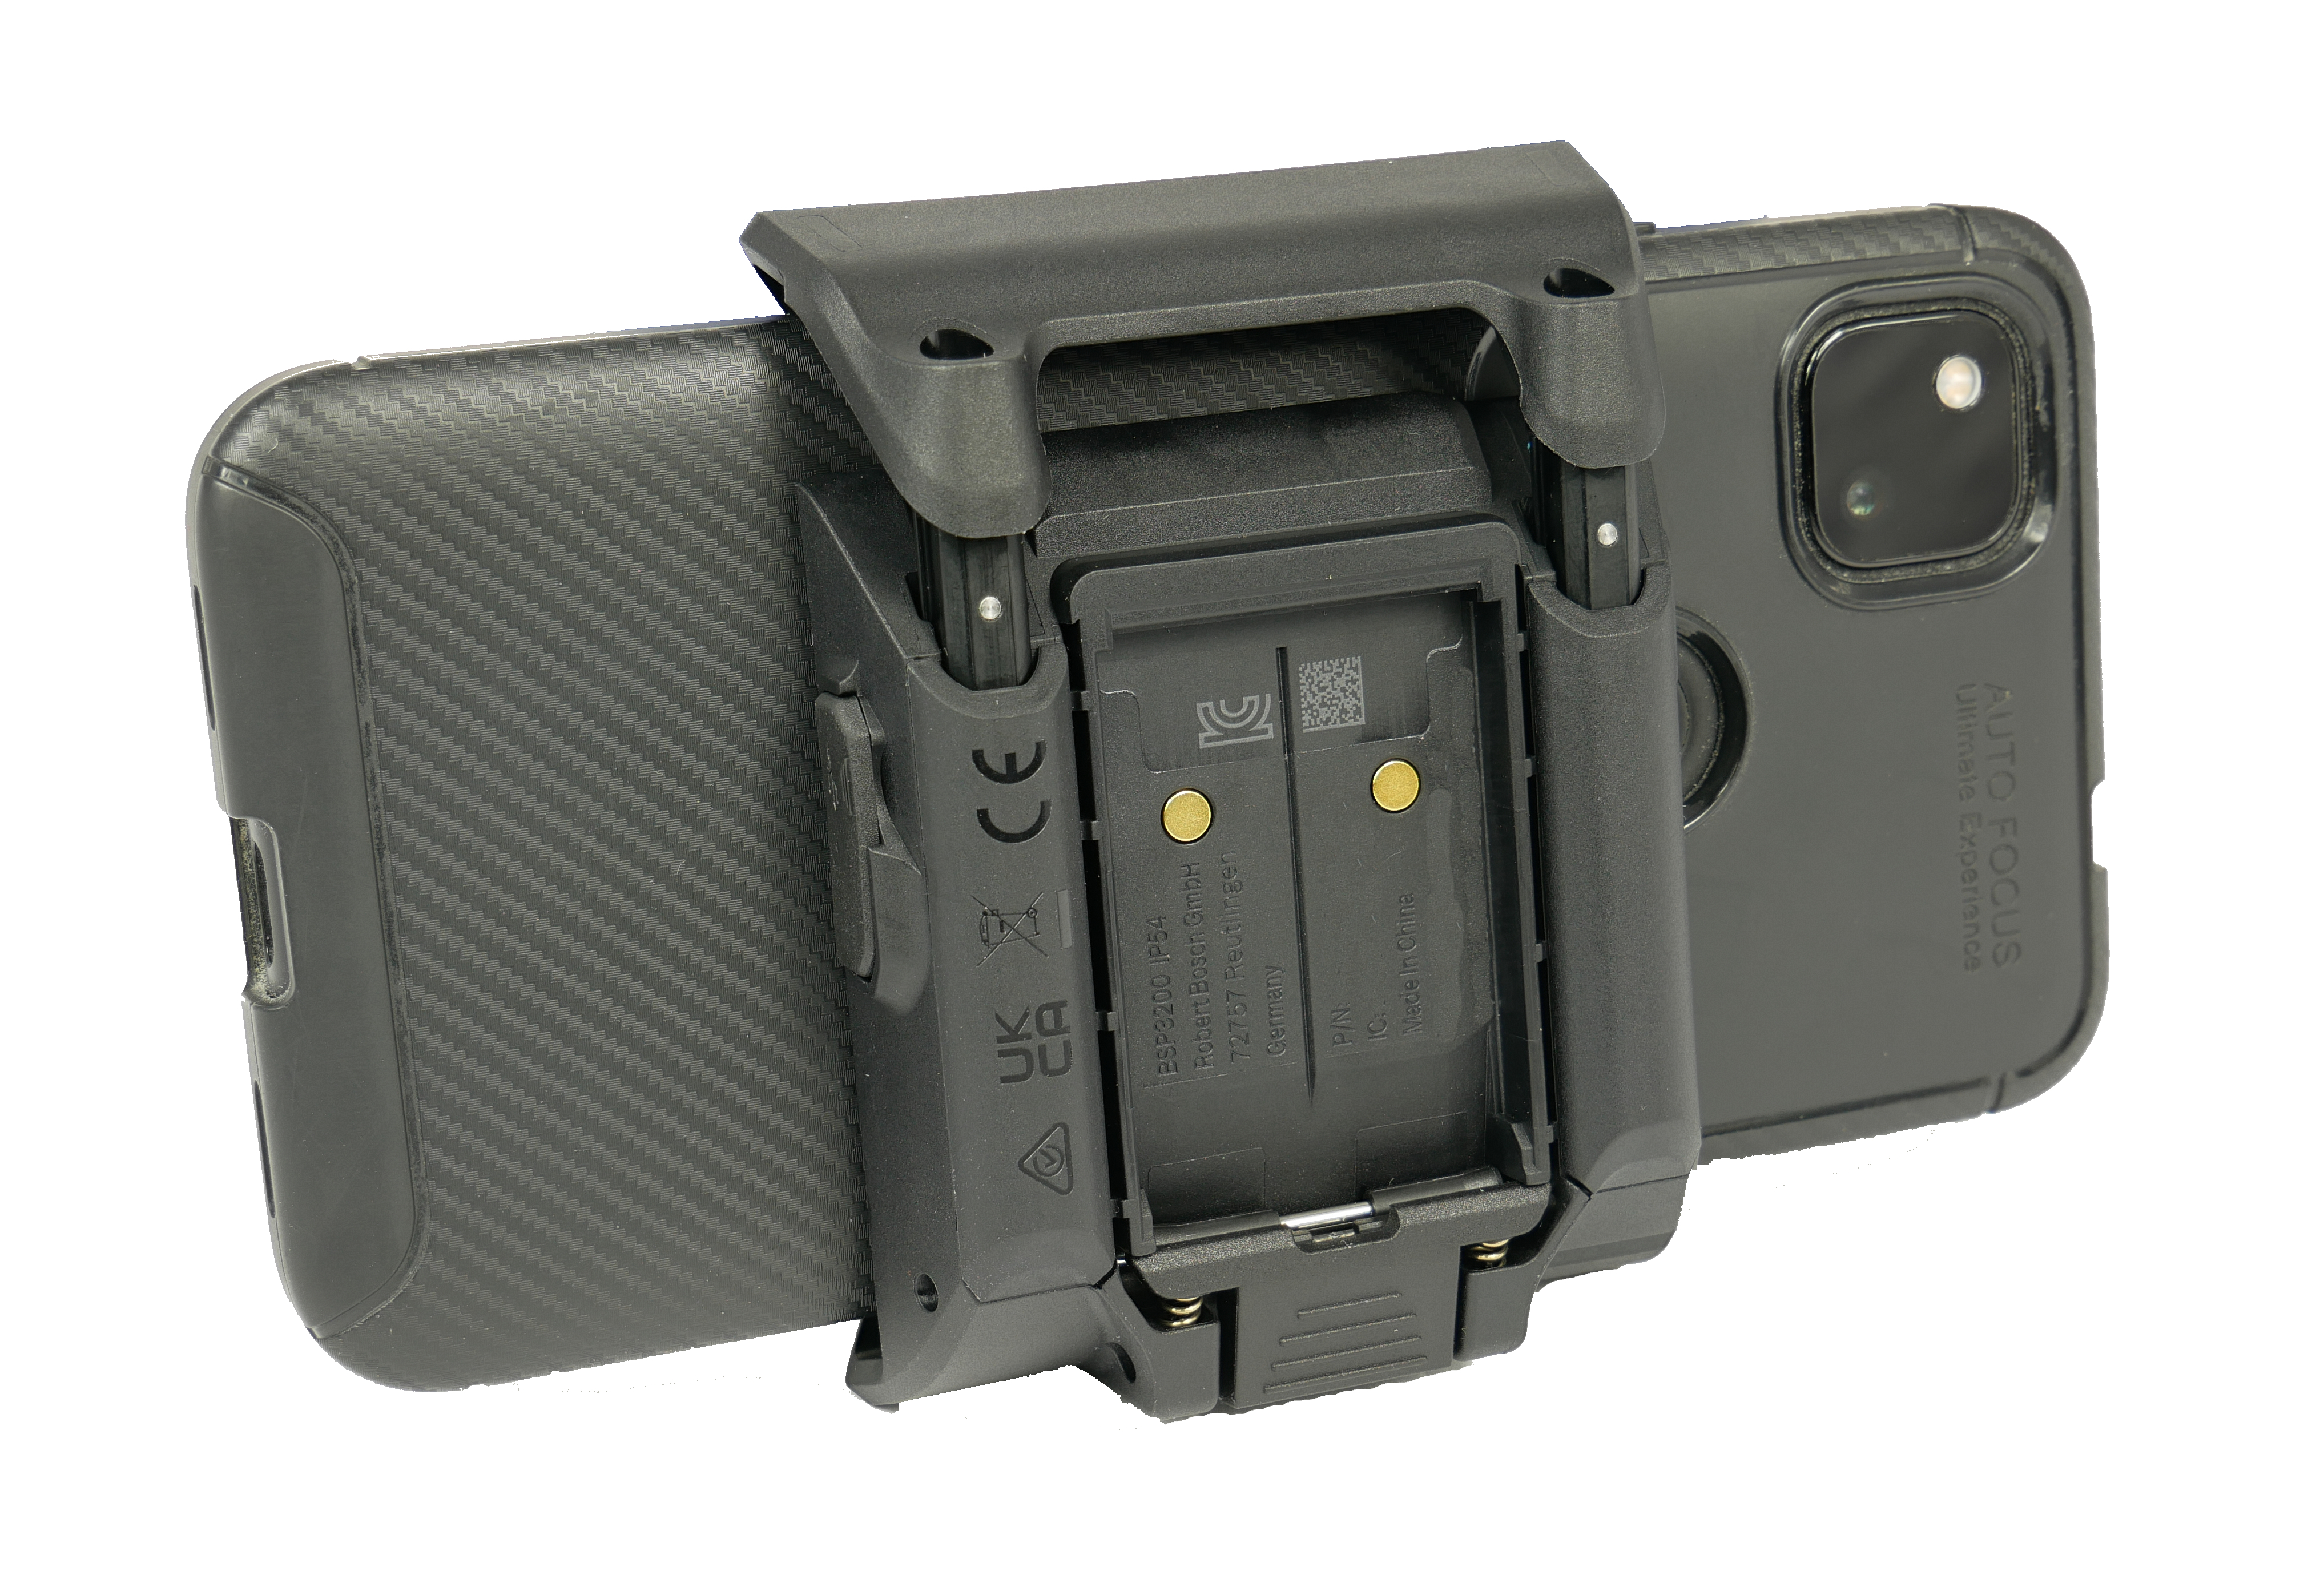 Bosch smartphone grip Smart System (BSP3200)